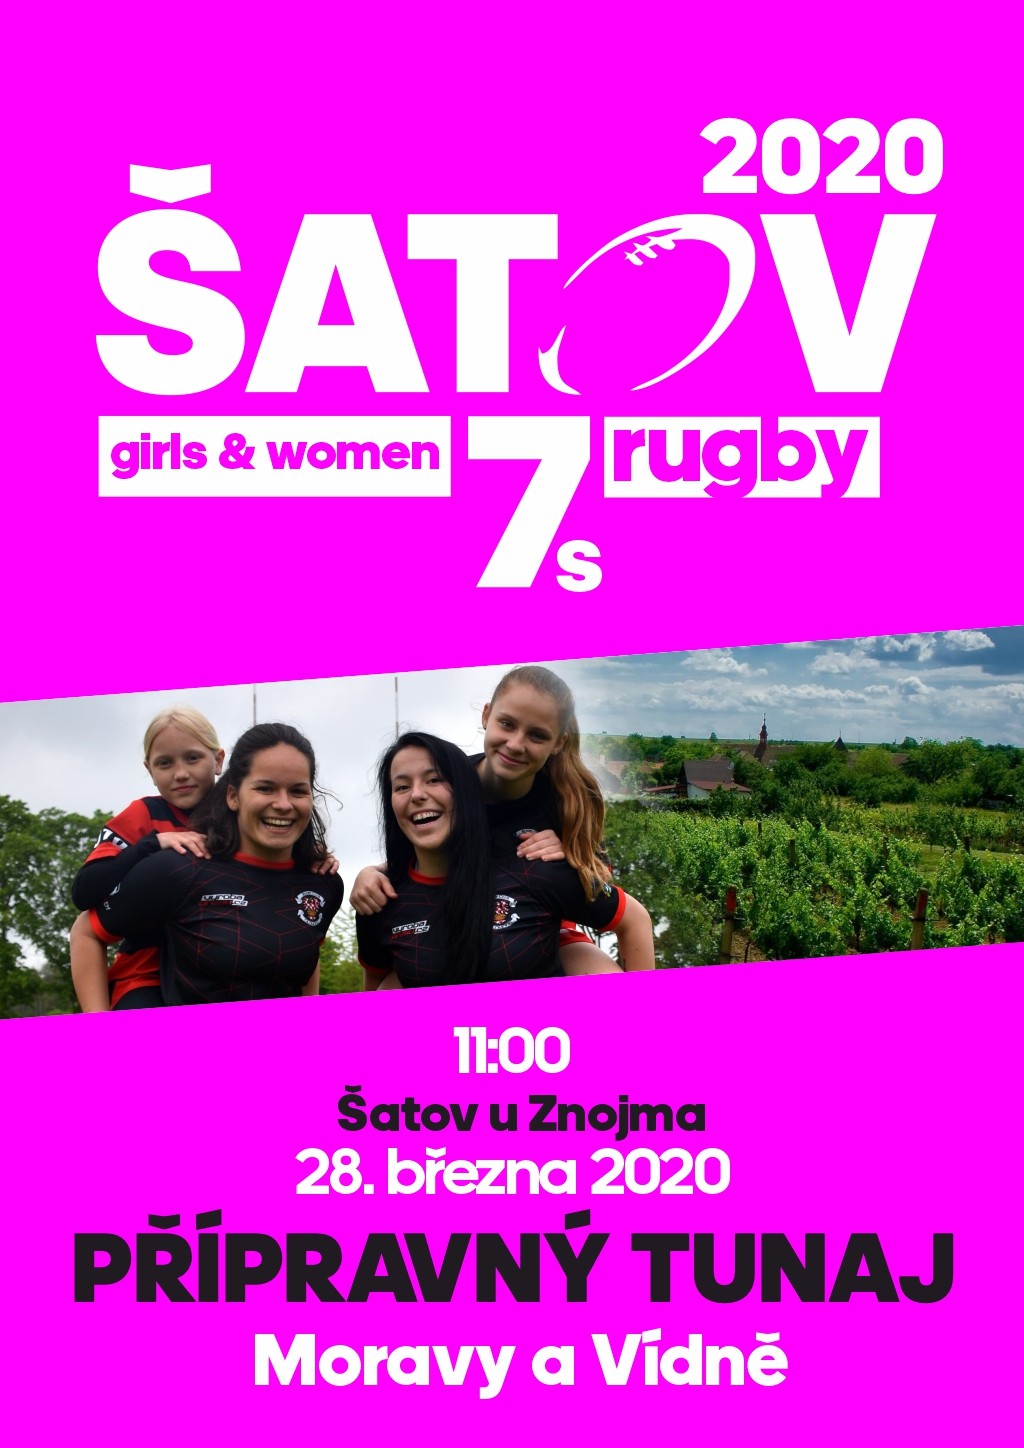 Přípravný turnaj rugby 7´s žen a dívek (Morava a Vídeň)